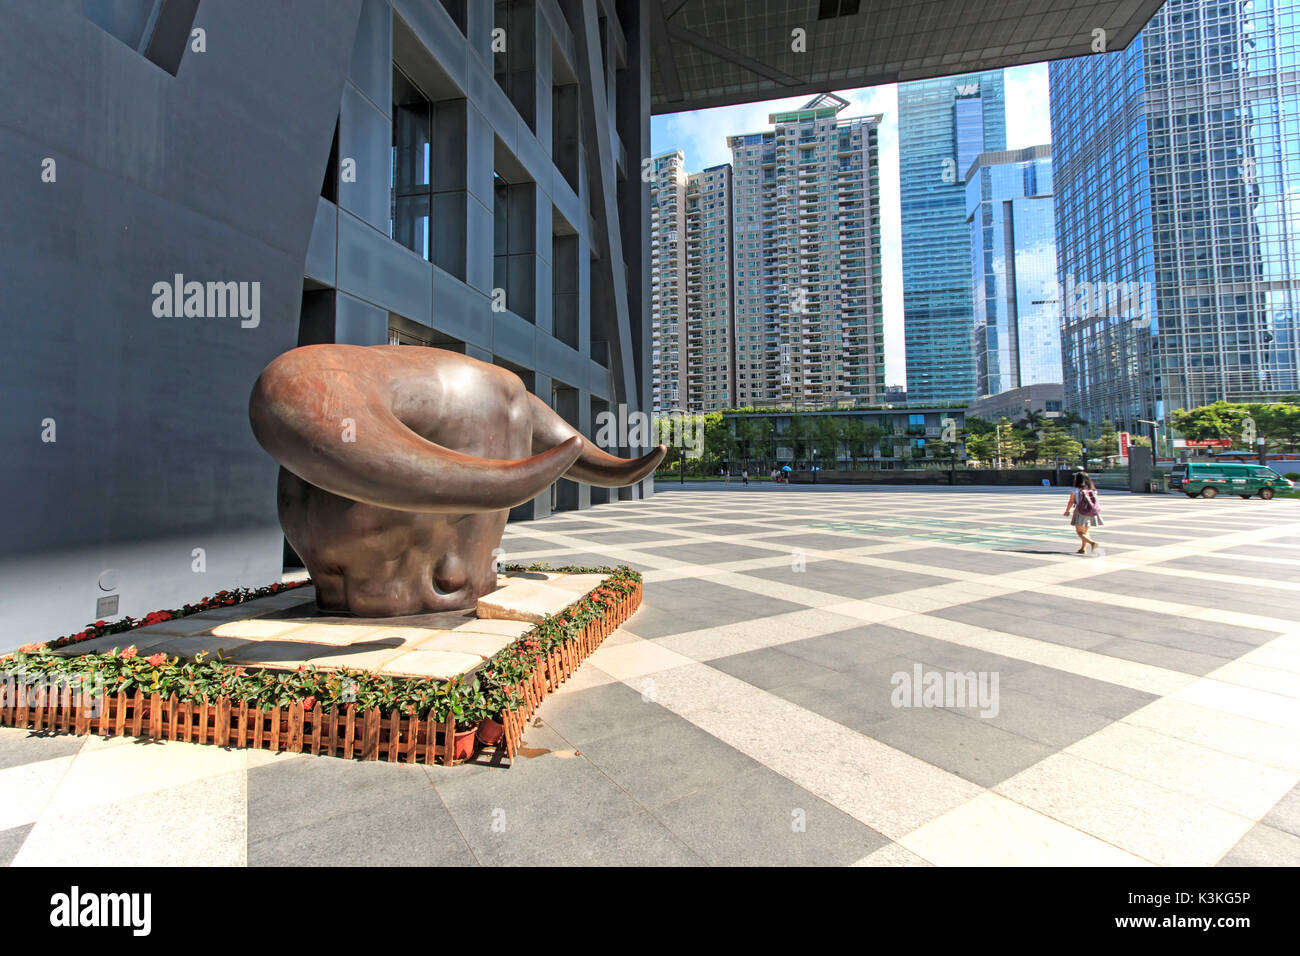 Bâtiment de la bourse de Shenzhen, l'une des trois places boursières en Chine, avec la statue de taureau de cuivre sur le premier plan. Les autres deux boursières de Chine sont à Hong Kong et Shanghai. Banque D'Images